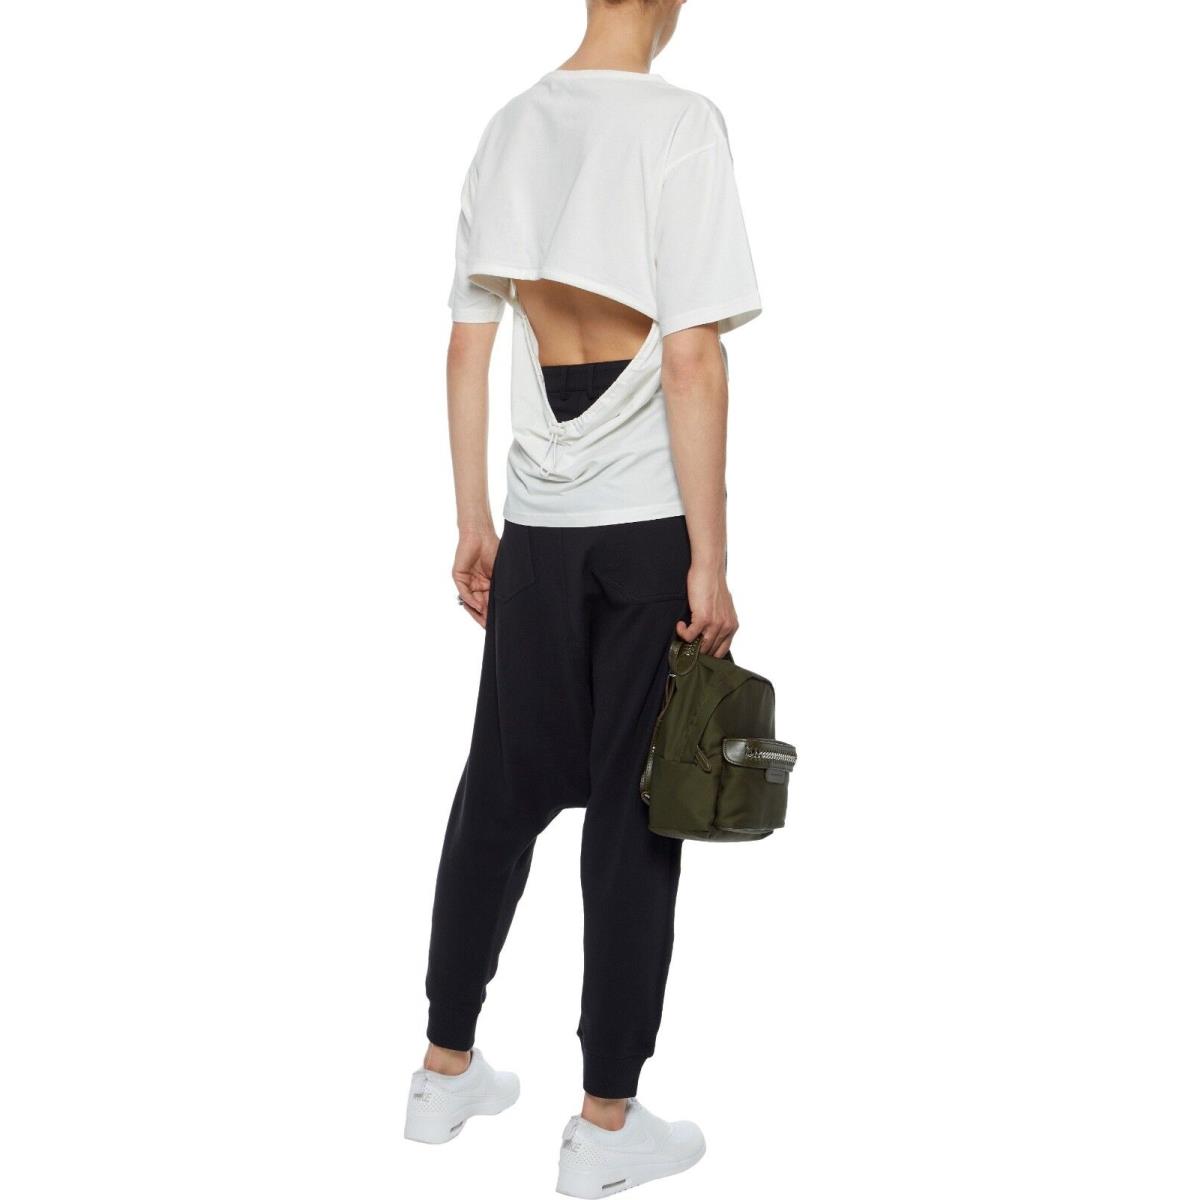 Adidas Y-3 by Yohji Yamamoto Women`s Cutout Stretch Cotton Jersey T-shirt White Sz XS L